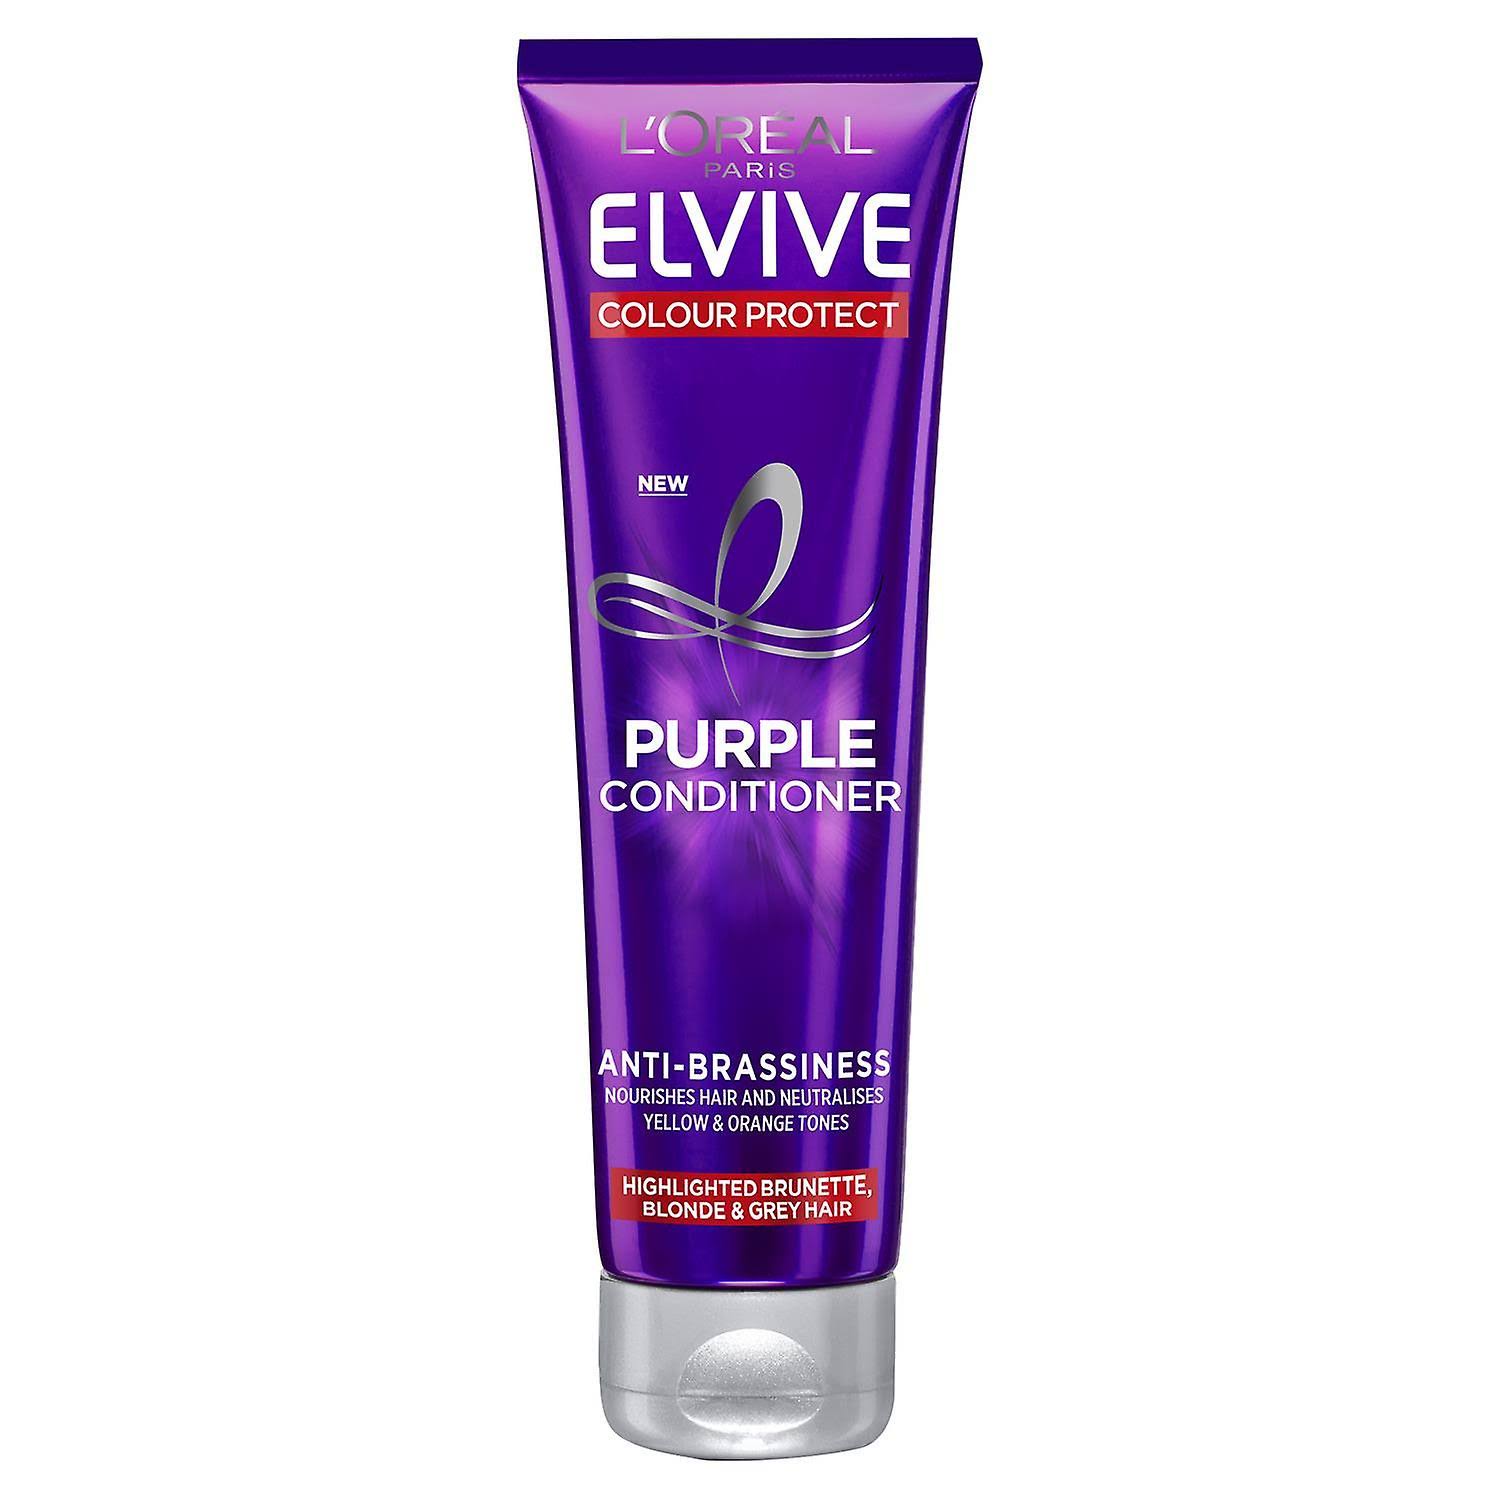 L'Oreal Elvive Colour Protect Anti-Brassiness Purple Conditioner 150ml